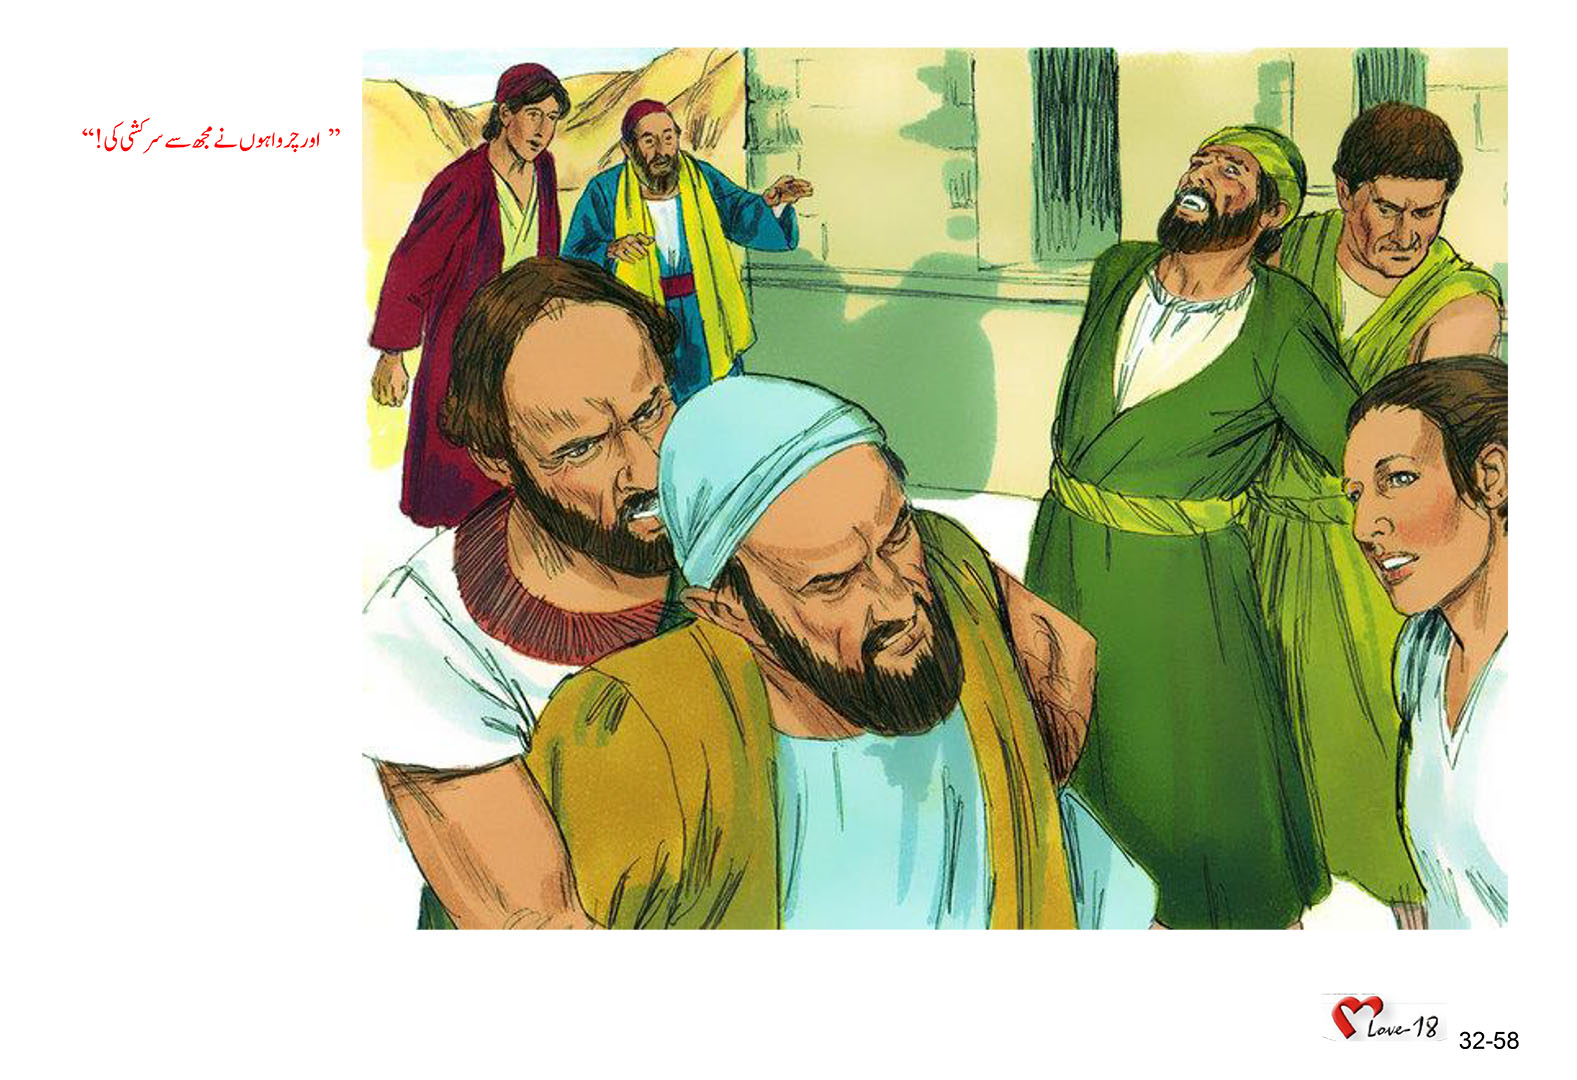 باب 32 - سبق 96 - خدا  کا  اسرائیل  سے  تعلق